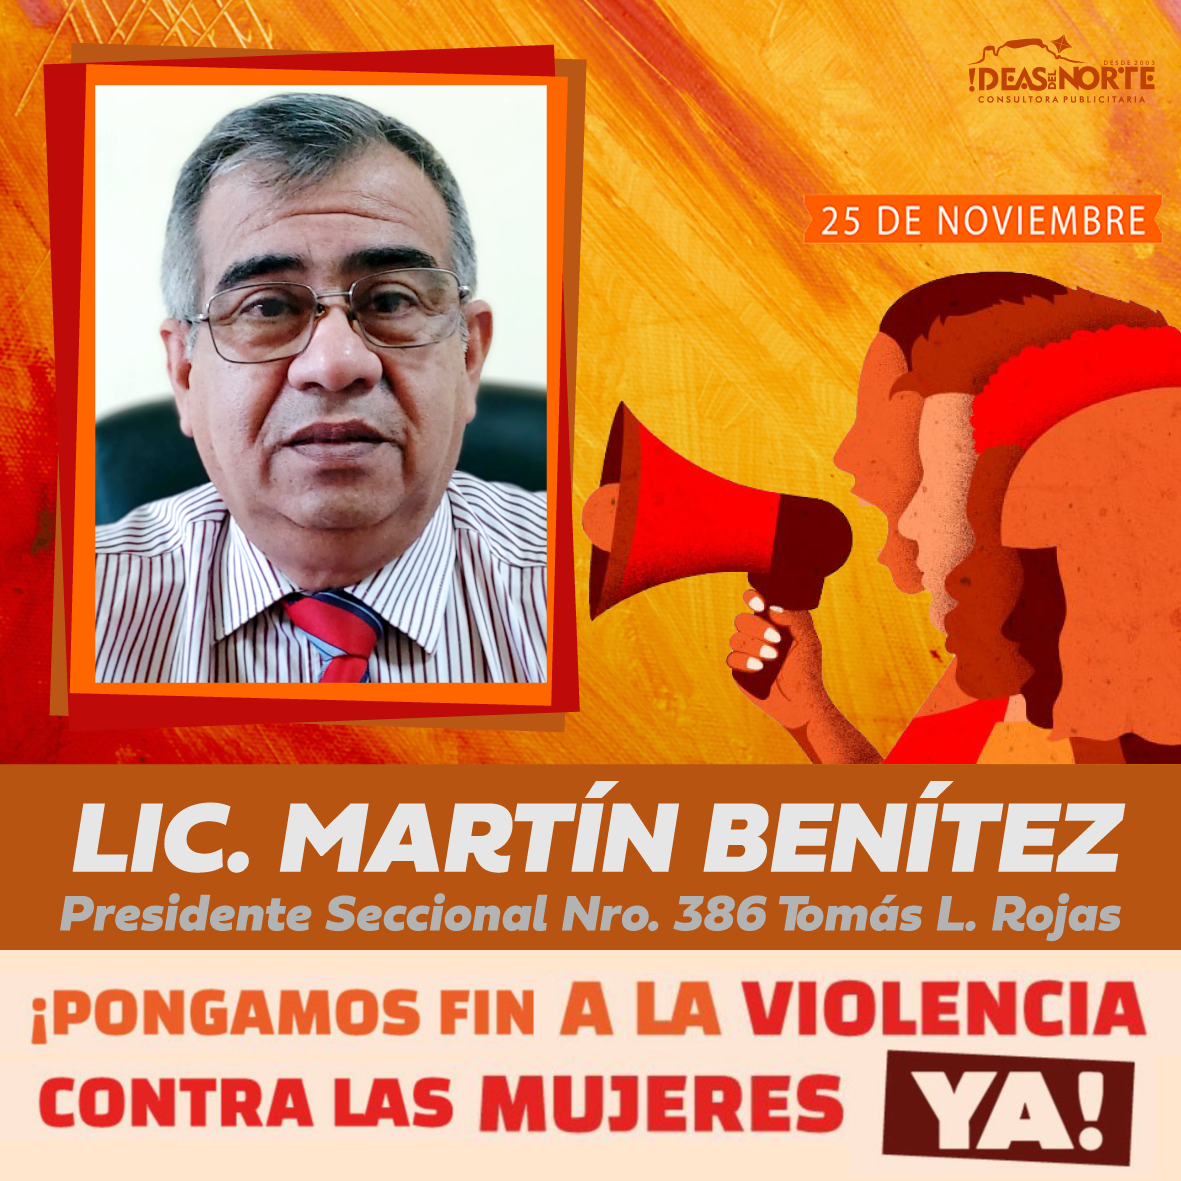 Martín Benítez